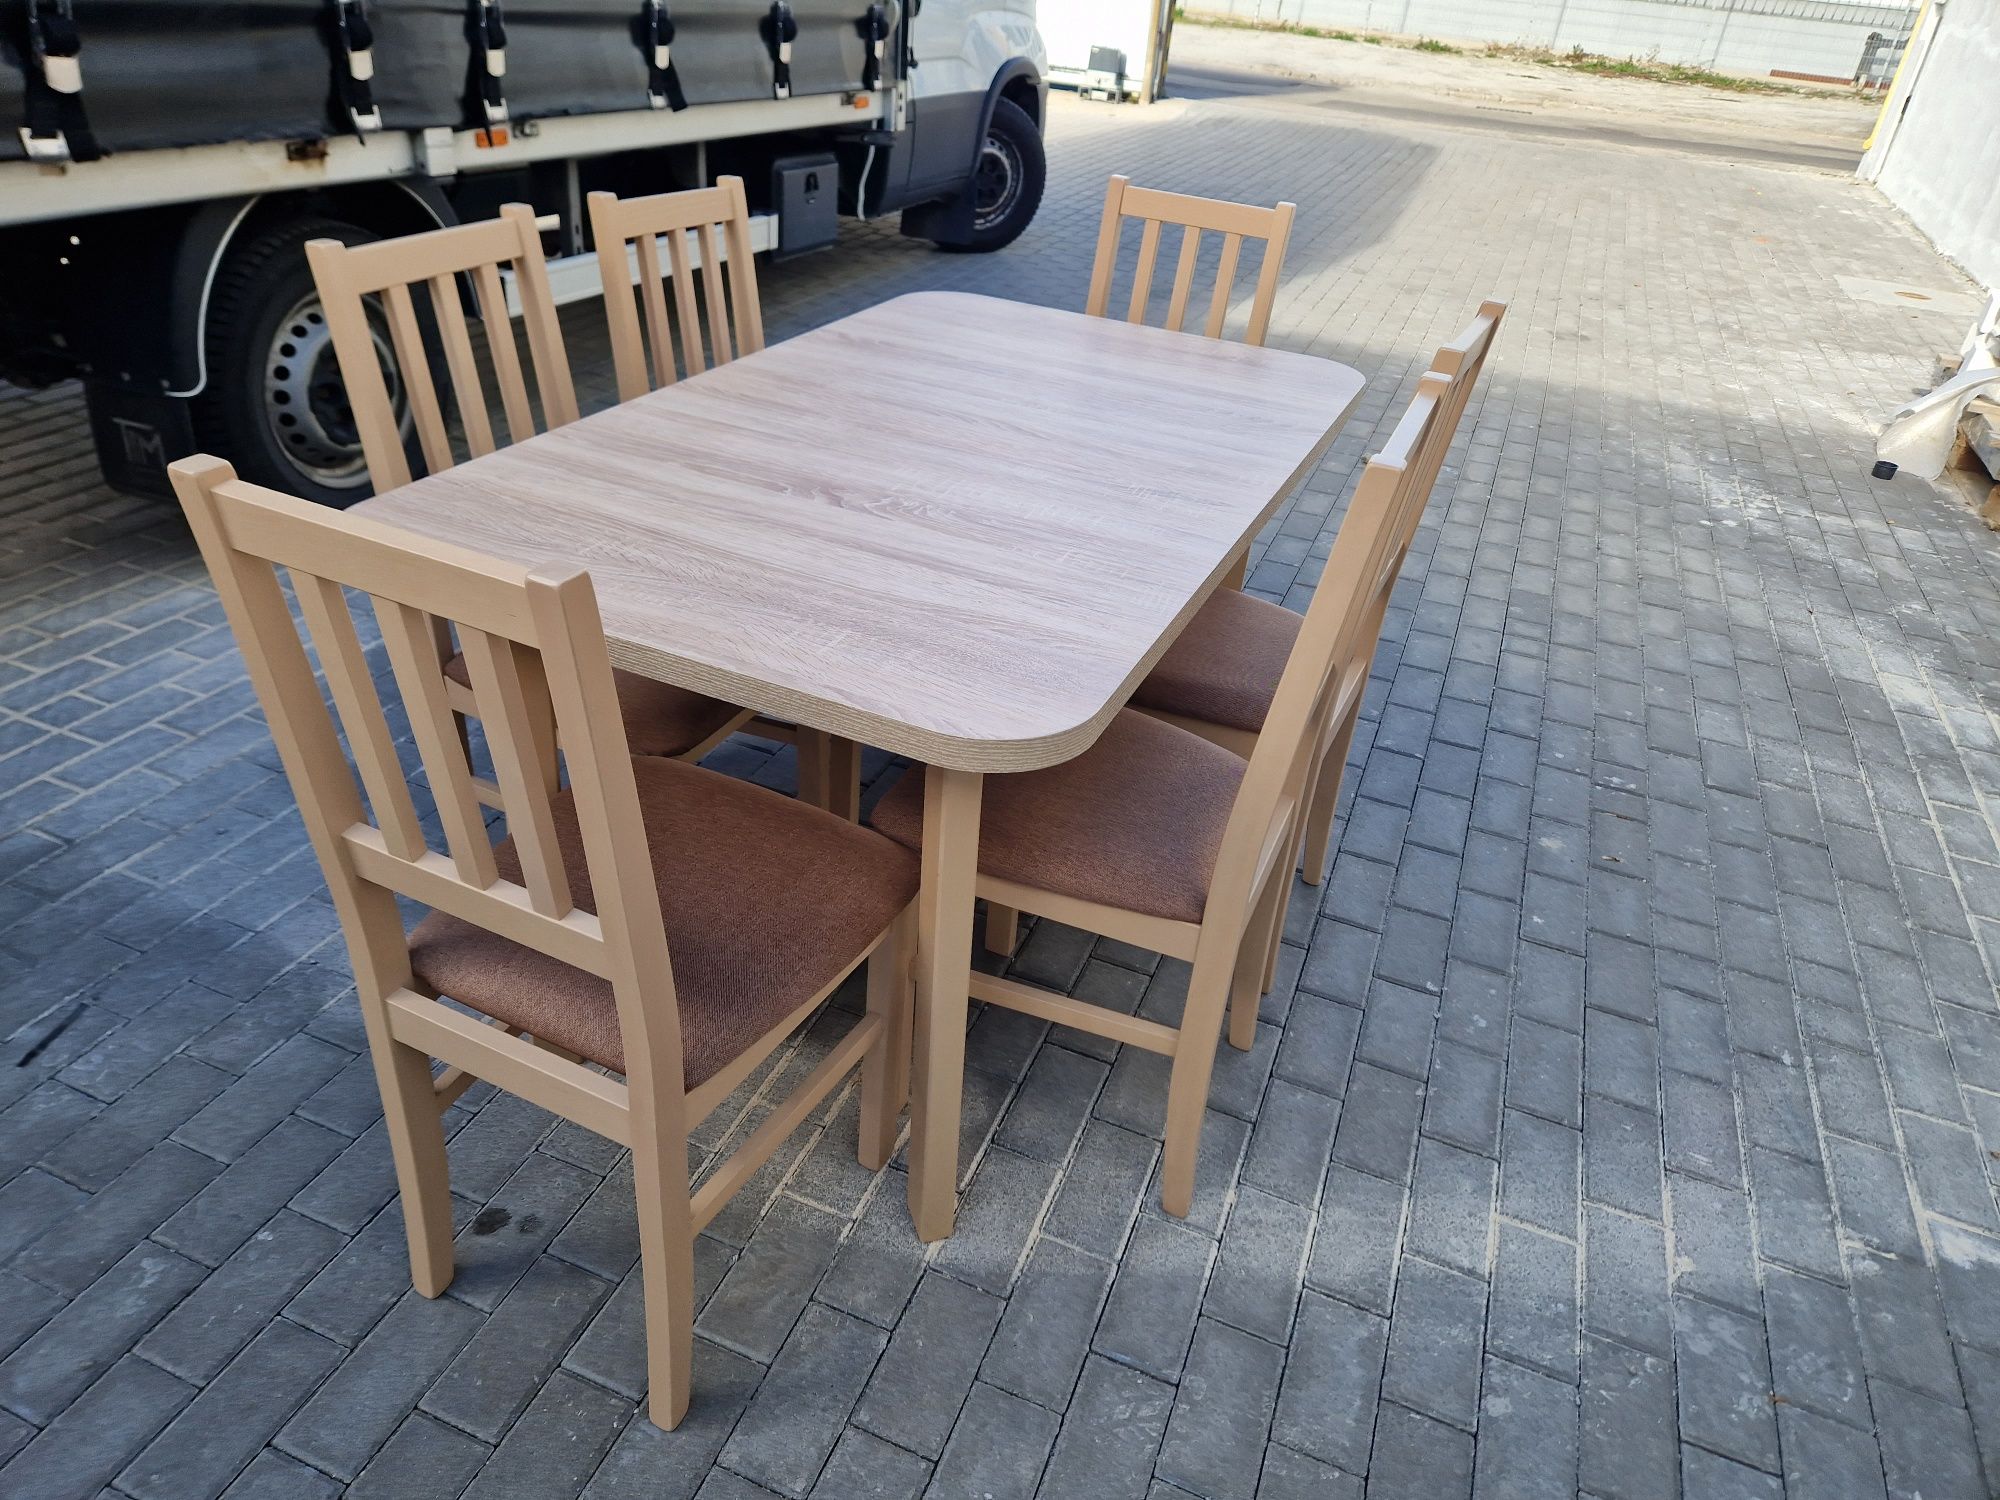 Nowe: Stół 80x140 rozkładany na 180cm + 6 krzeseł, dostawaPL